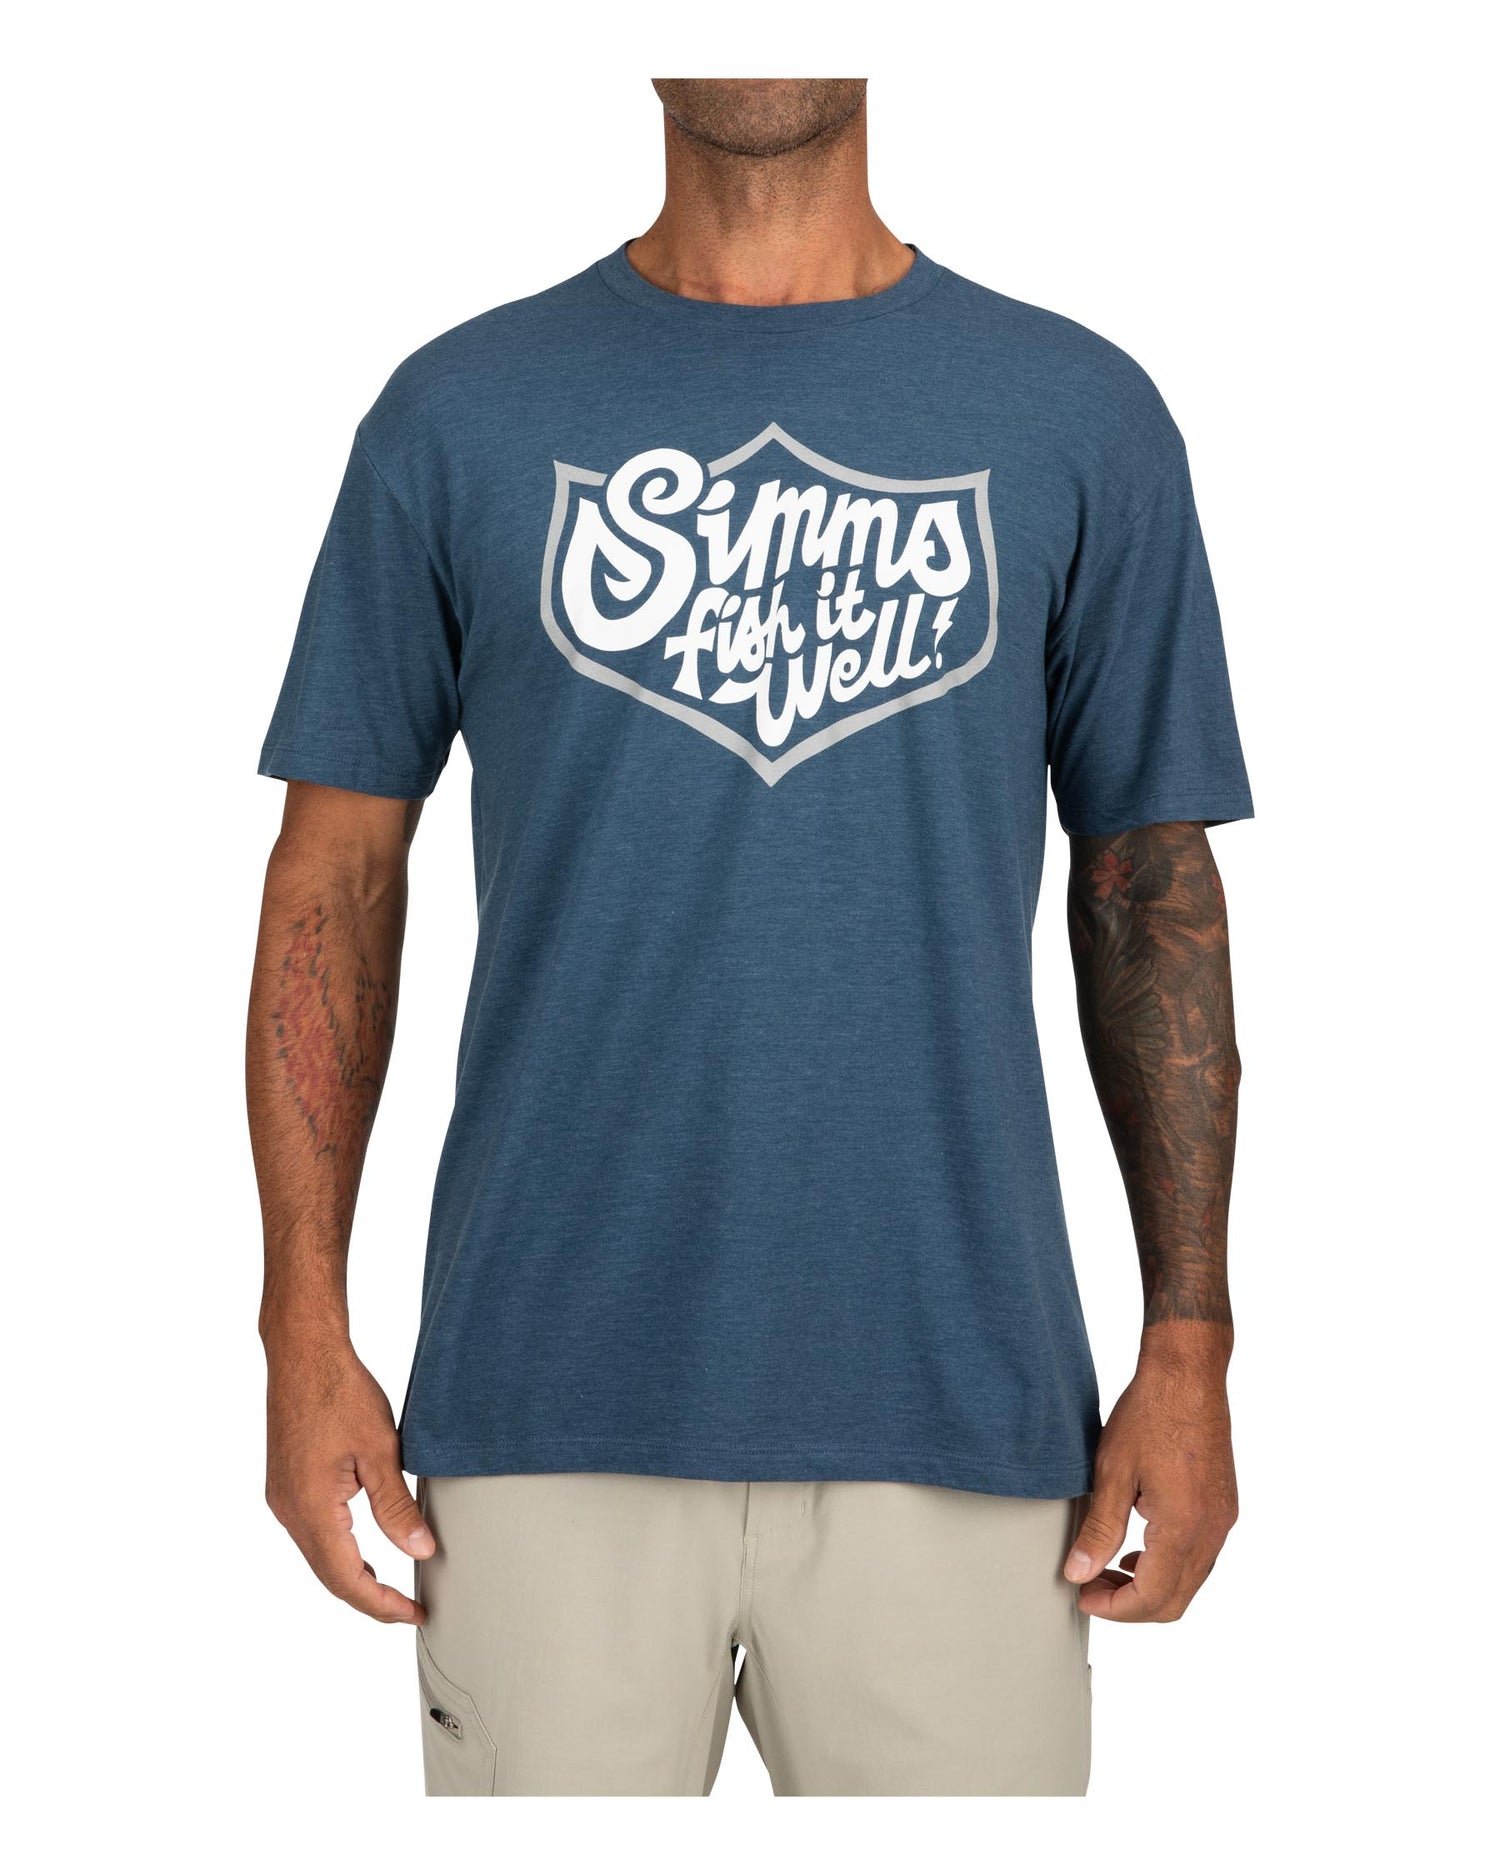  Simms Men's Fish It Well 250 T-Shirt - Cotton Blend